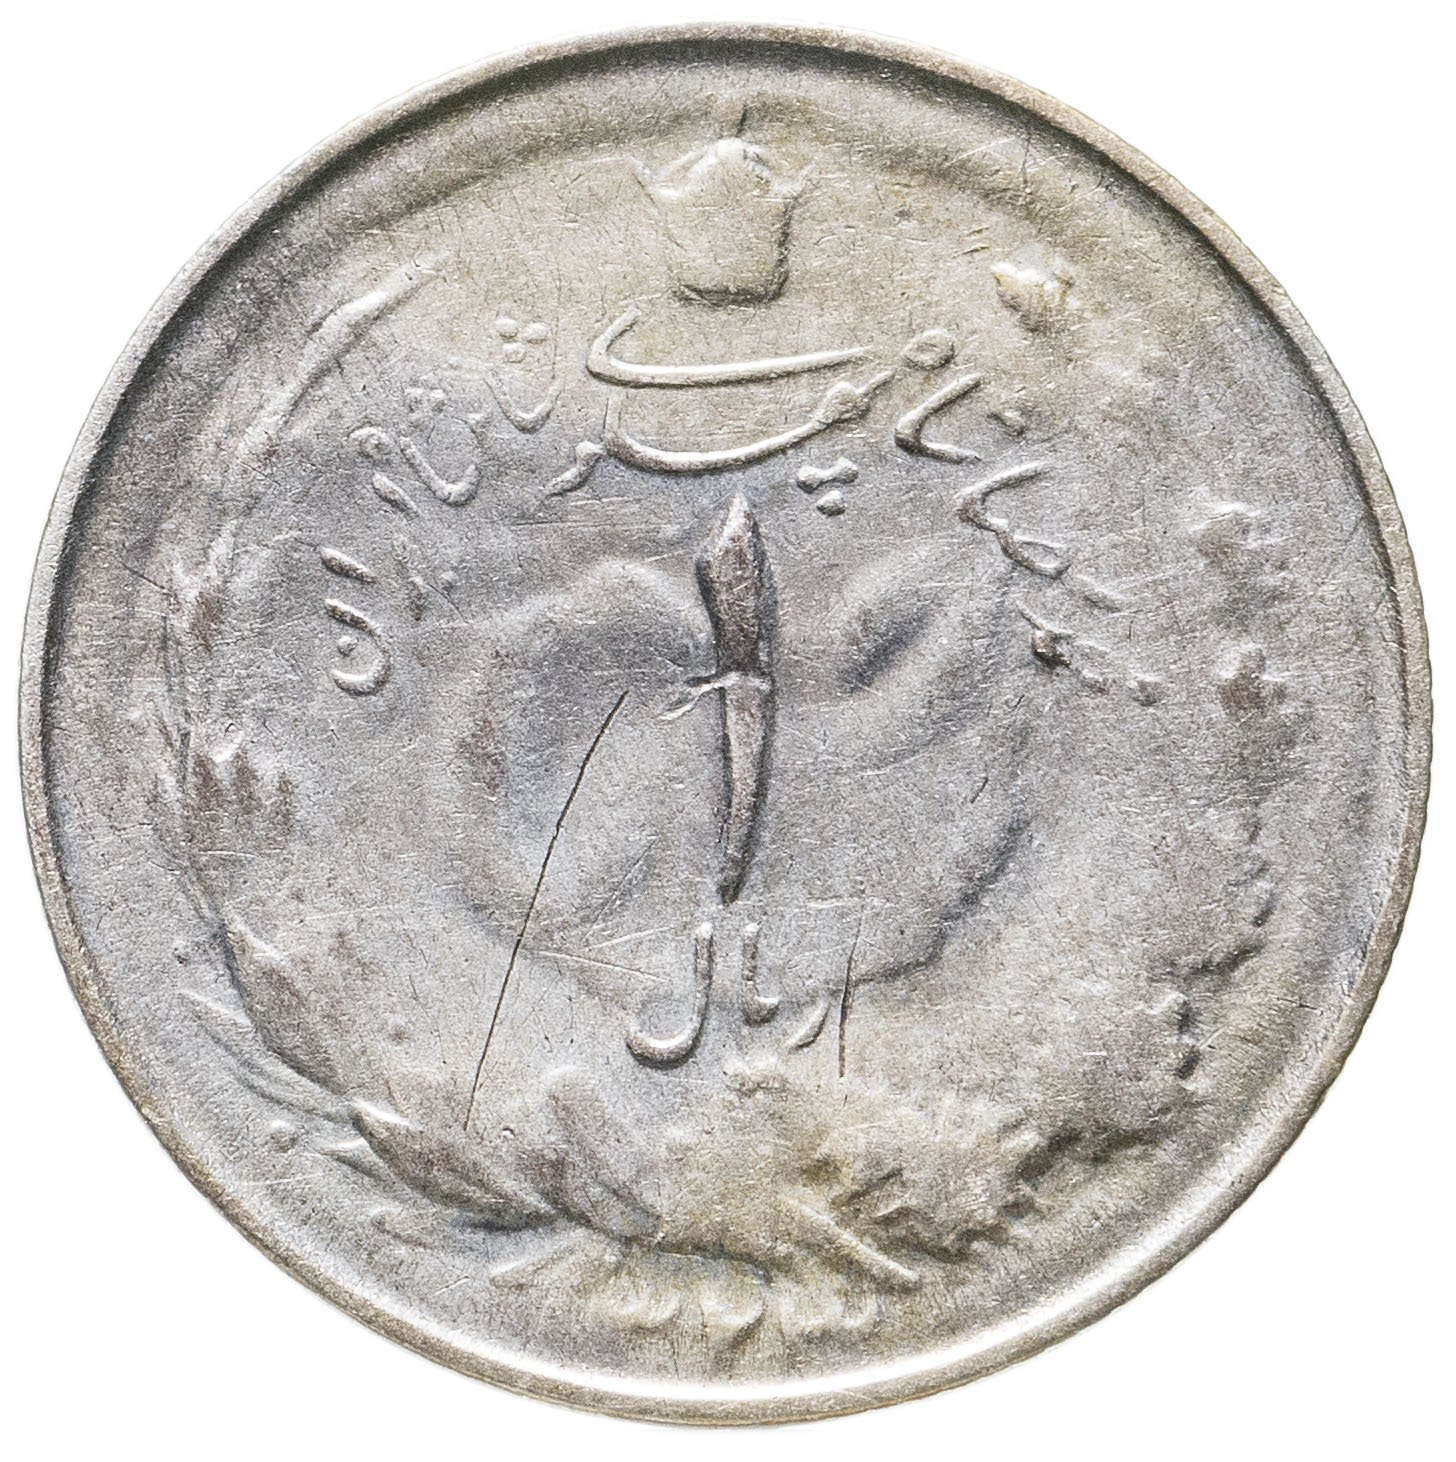 монеты ирана каталог